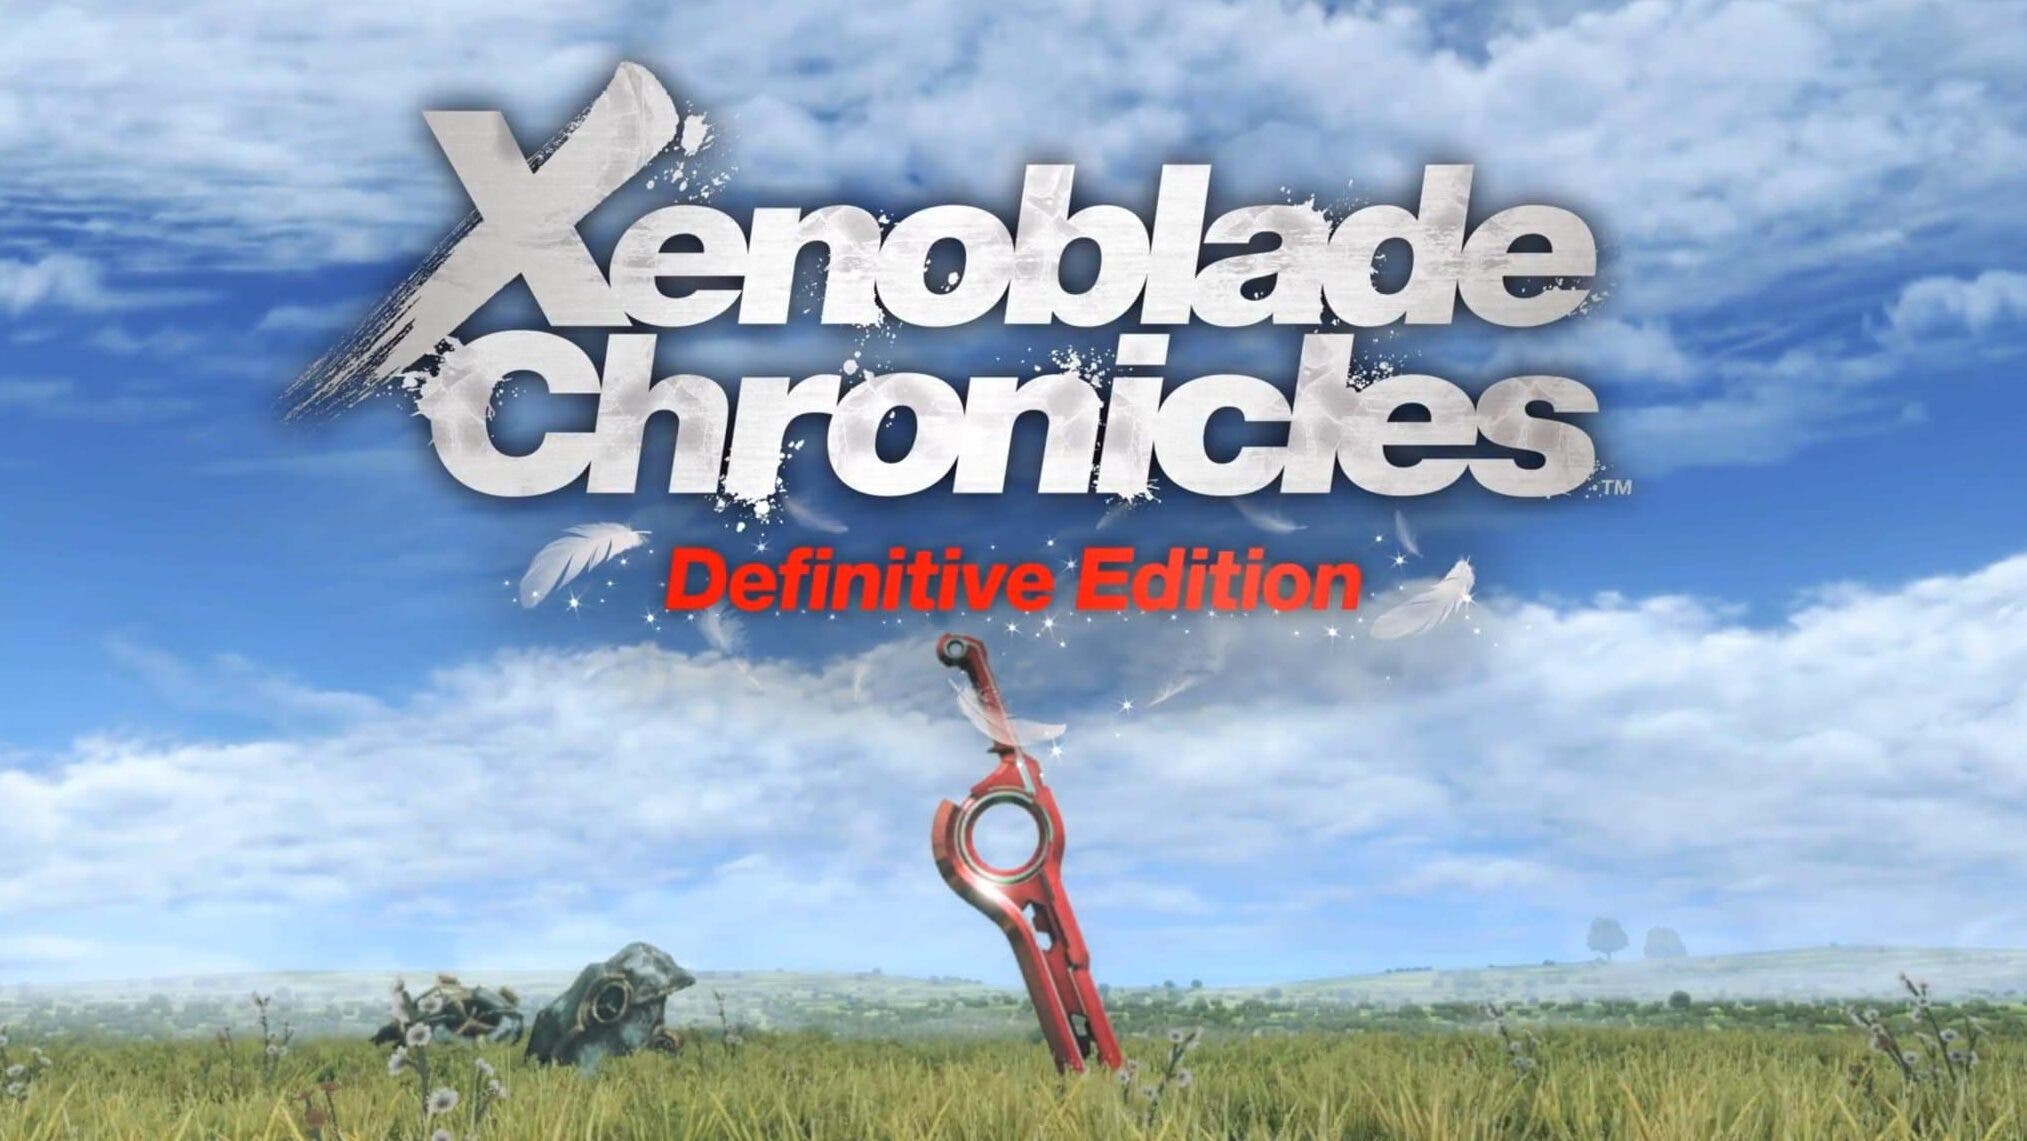 Xenoblade Chronicles Definitive Edition se lanza el 29 de mayo